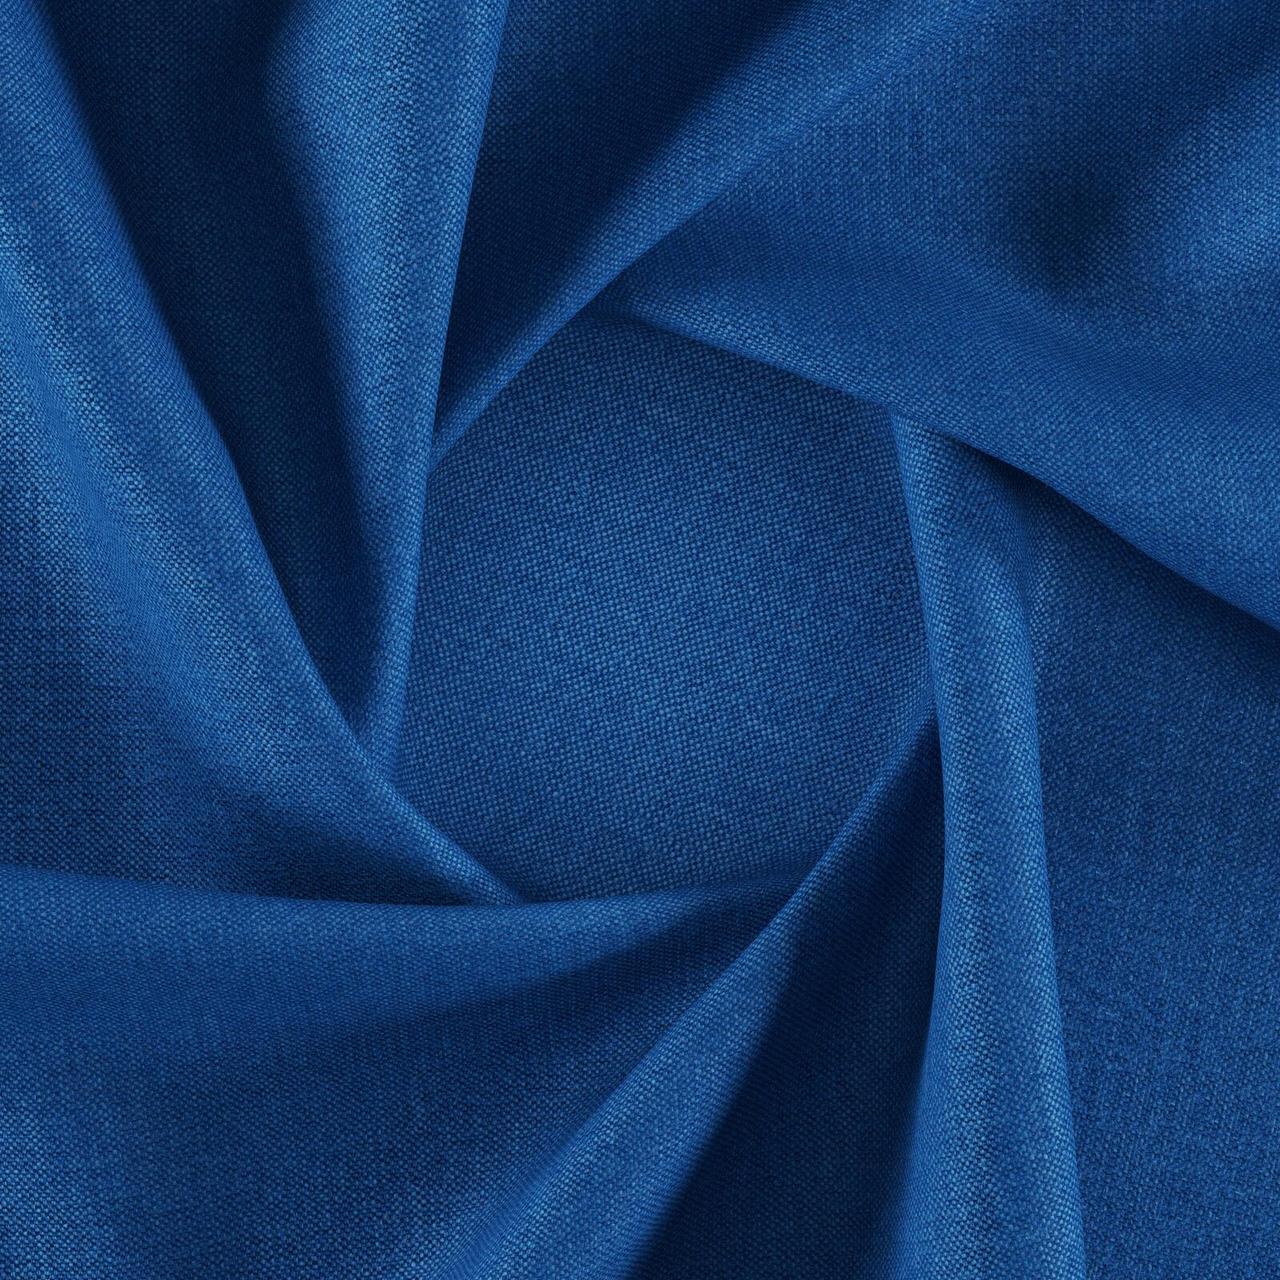 Тканина для перетяжки м'яких меблів шеніл Перфекто (Perfecto) яскраво-синього кольору